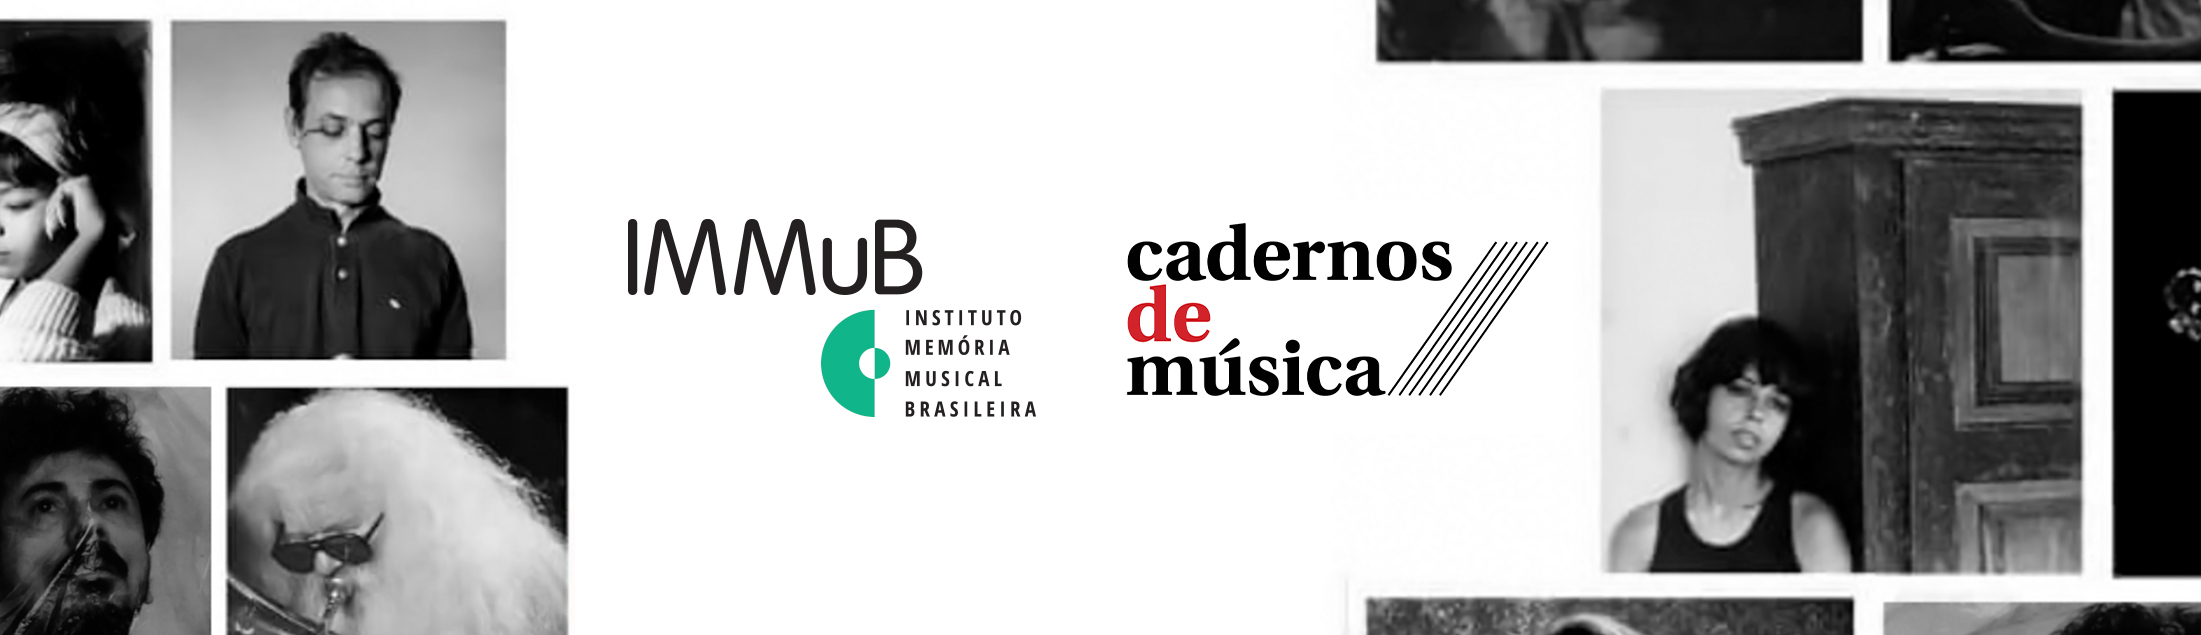 IMMuB e Cadernos de Música firmam parceria pela memória musical brasileira